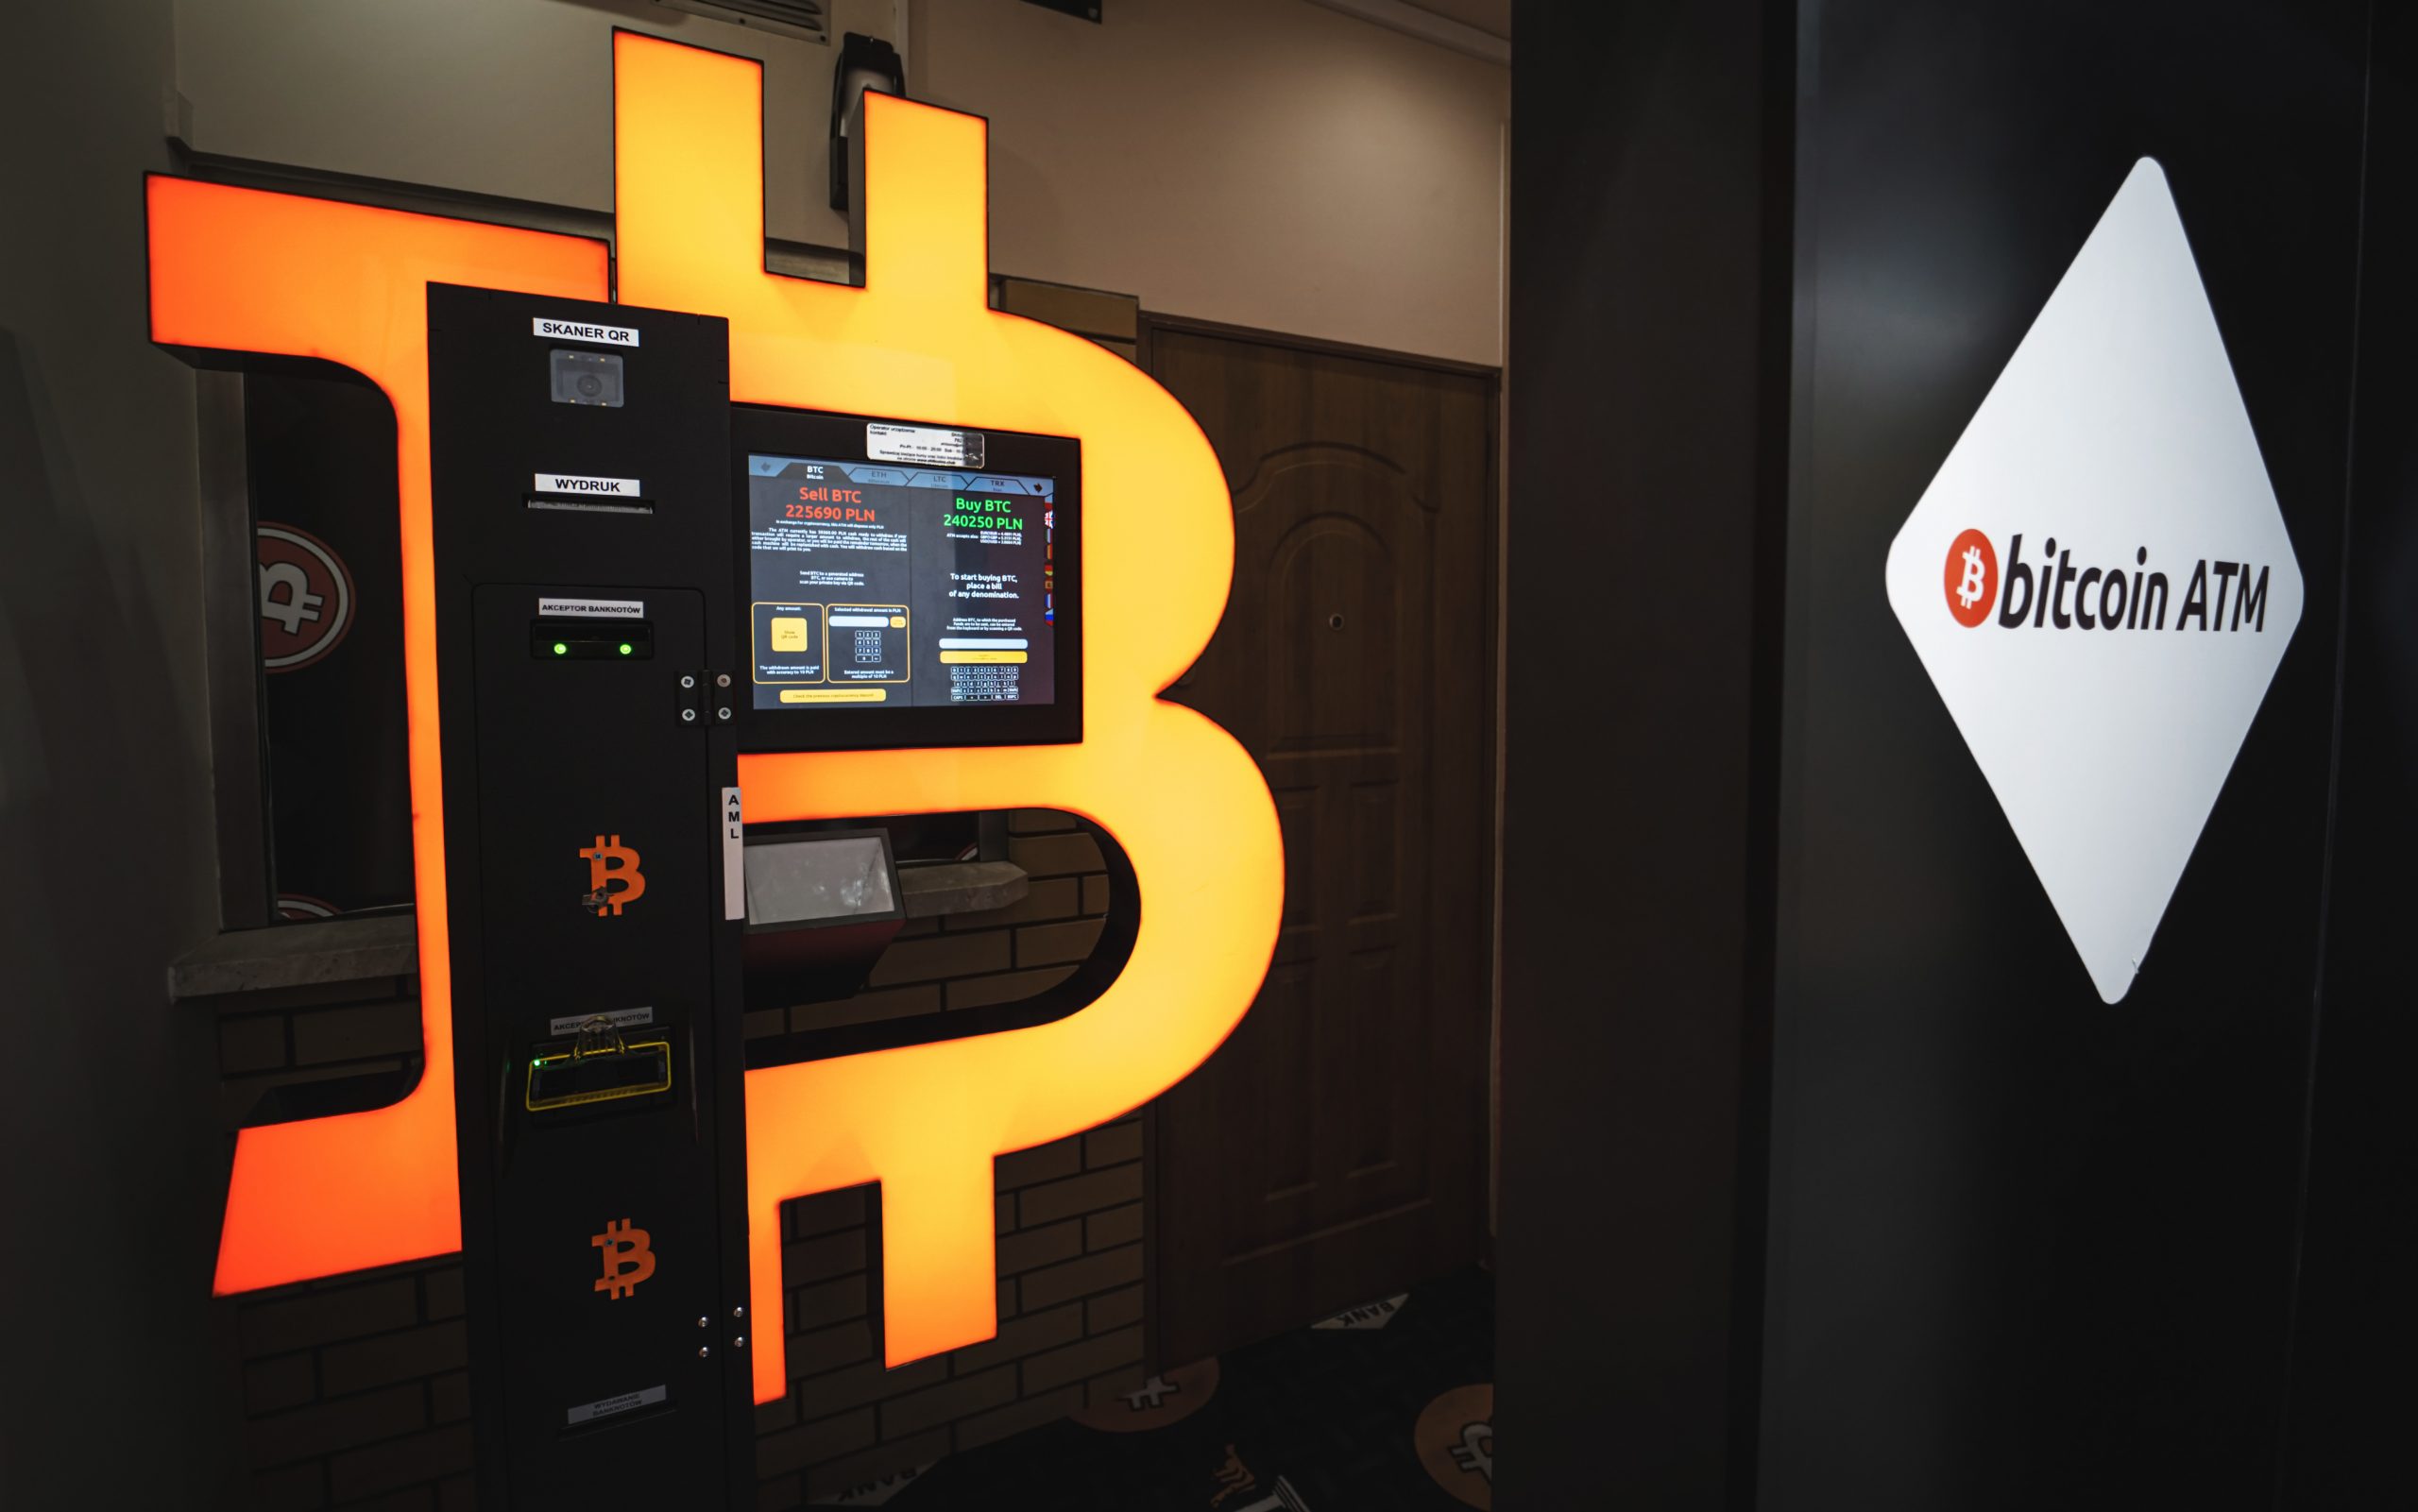 Cơ quan quản lý tài chính của Vương quốc Anh ra lệnh đóng cửa tất cả các máy ATM Bitcoin